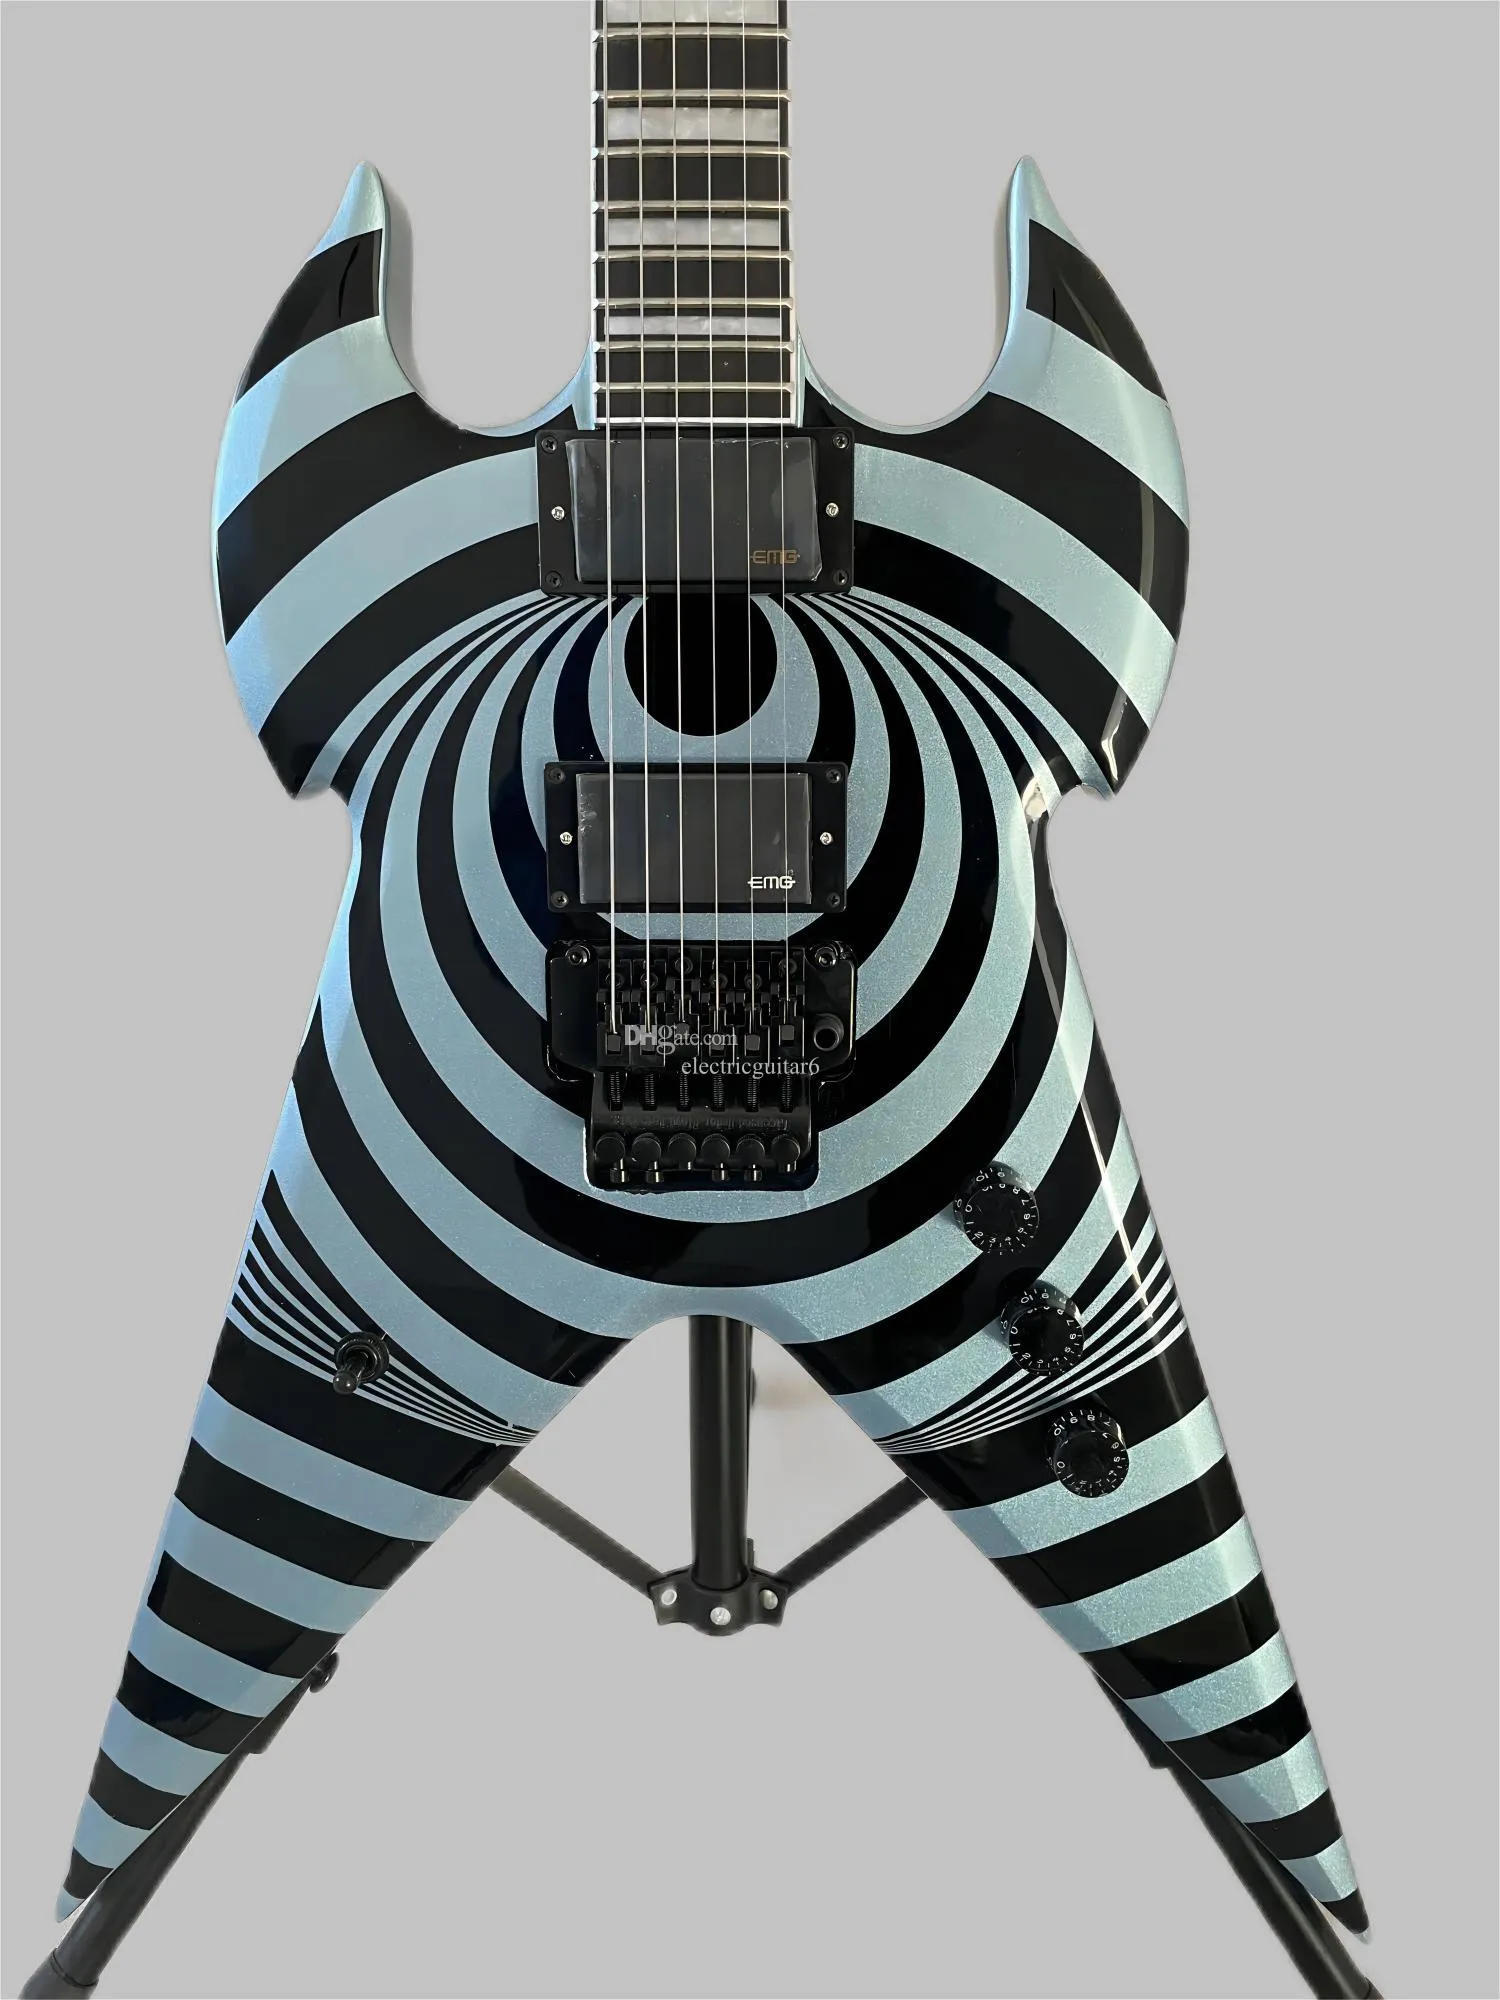 Chitarra elettrica OEM cinese volante stile V in metallo colore blu duplex tremolo sistema zakk wylde audio per chitarra